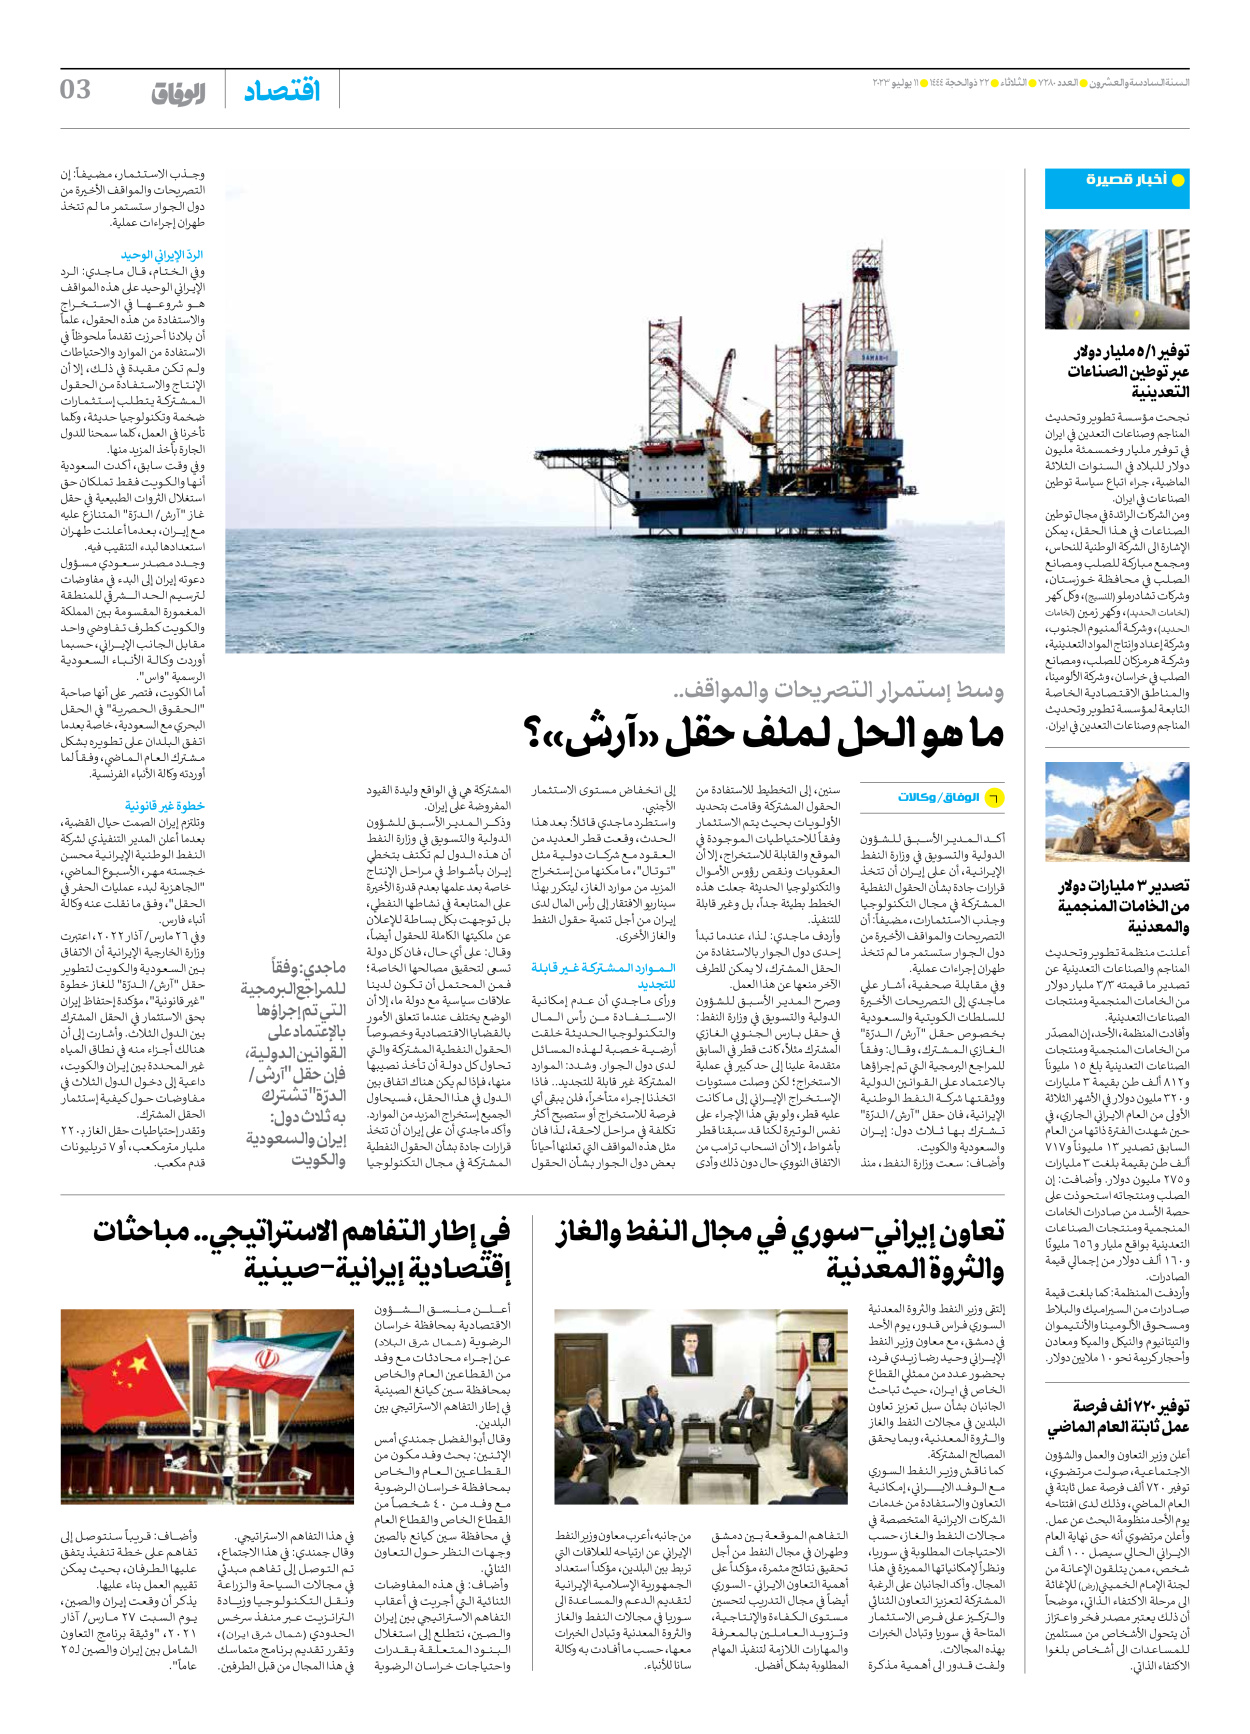 صحیفة ایران الدولیة الوفاق - العدد سبعة آلاف ومائتان وثمانون - ١١ يوليو ٢٠٢٣ - الصفحة ۳